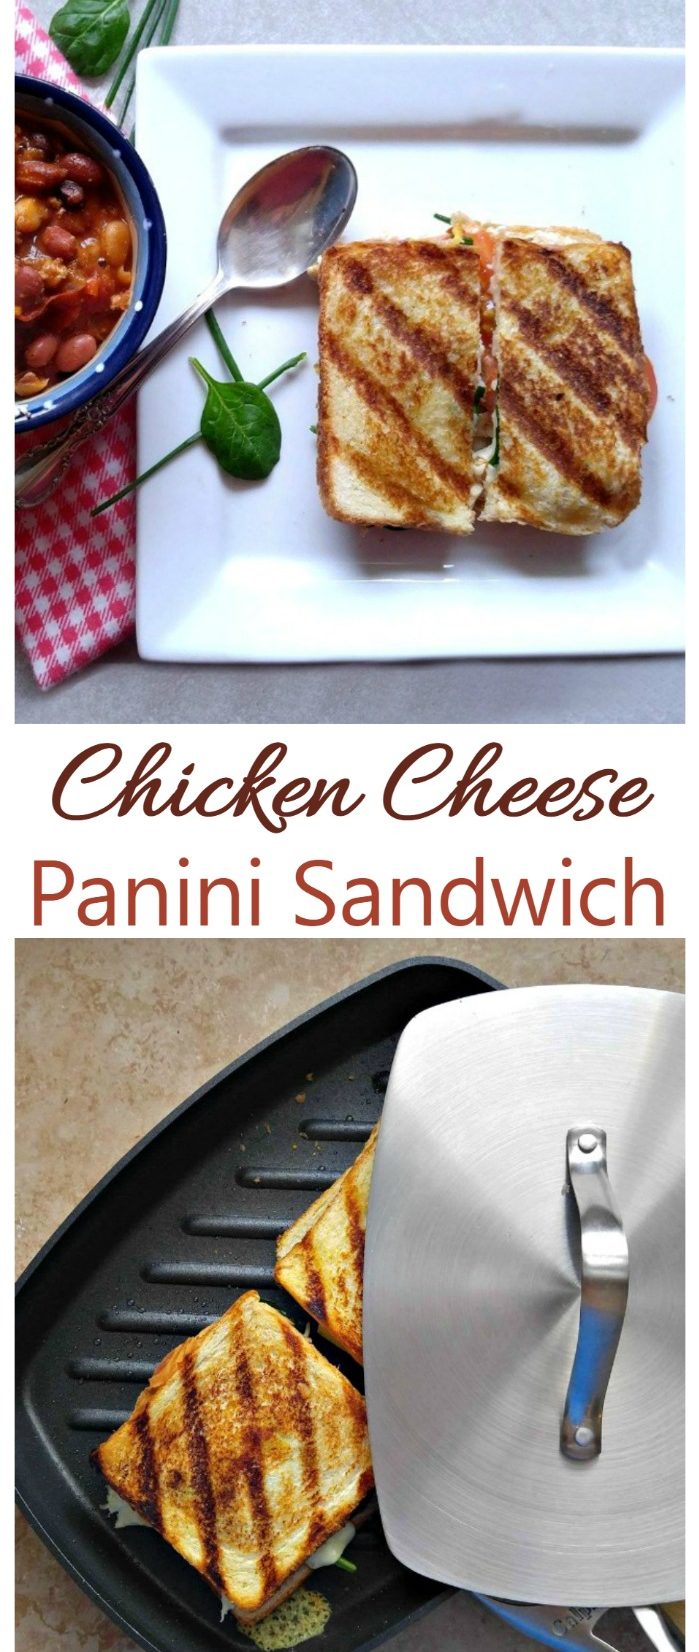 Sándwich Panini de pollo y queso - Delicia para adelgazar a la hora de comer